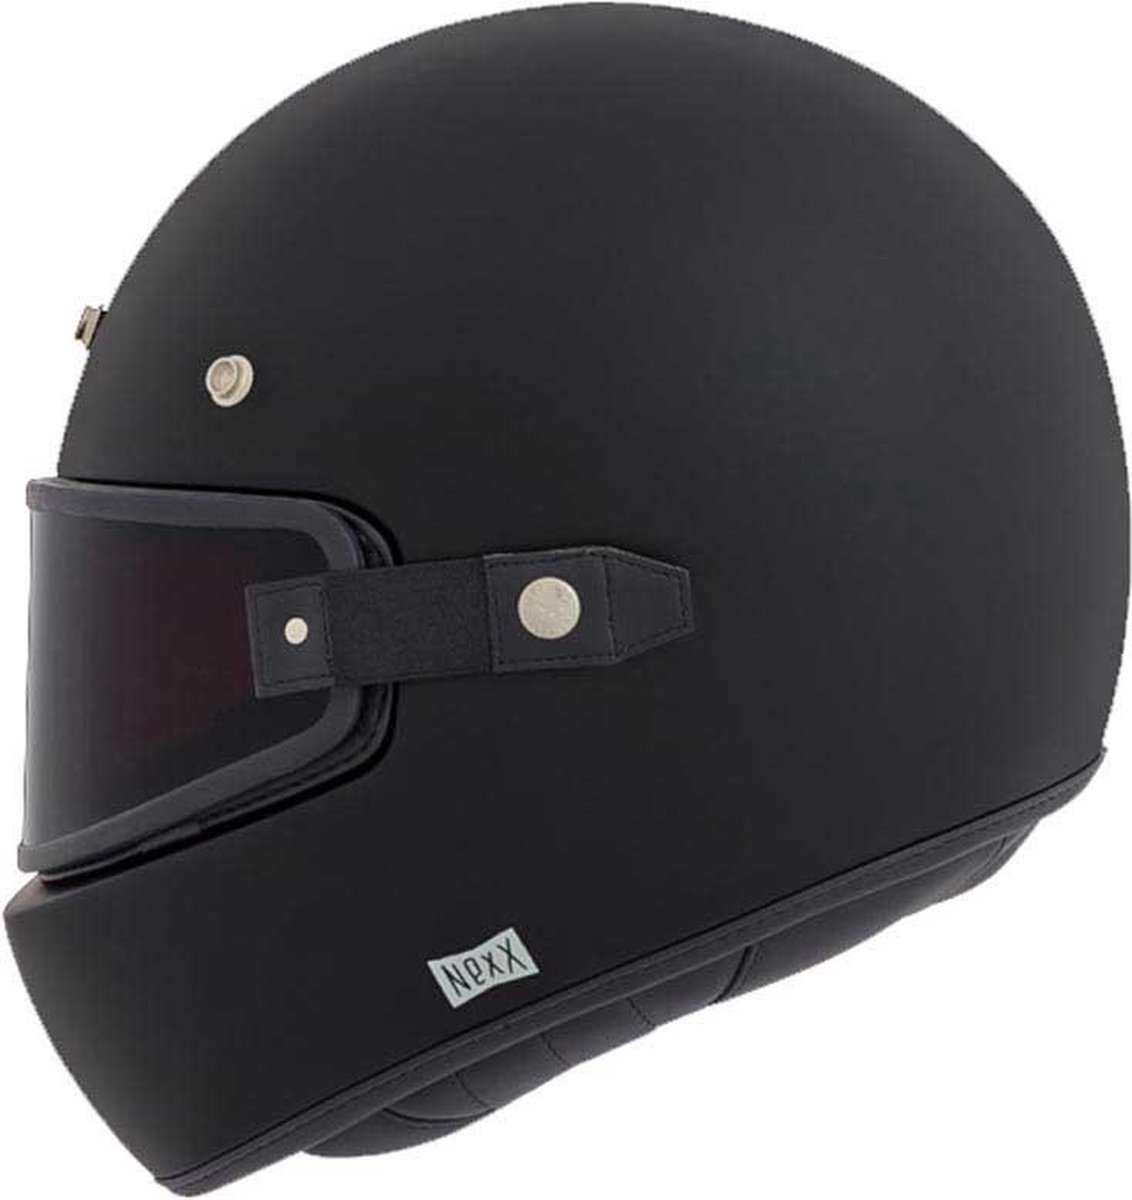 NEXX XG.100 PURIST BLACK MATTE L - Maat L - Helm